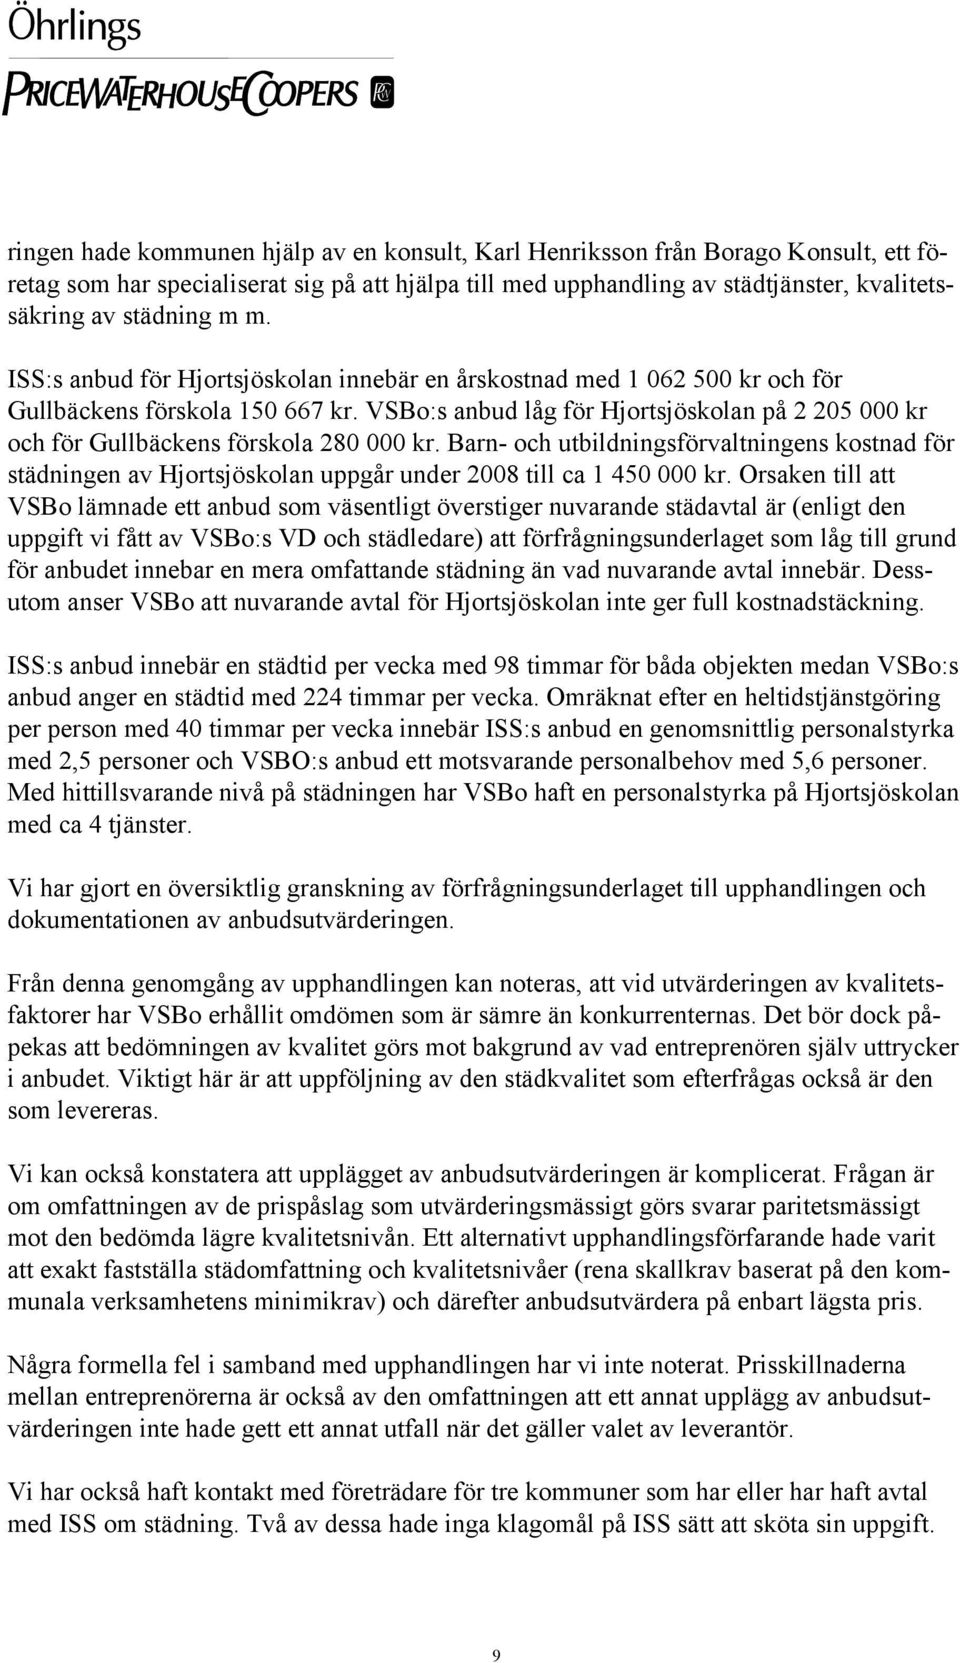 VSBo:s anbud låg för Hjortsjöskolan på 2 205 000 kr och för Gullbäckens förskola 280 000 kr.